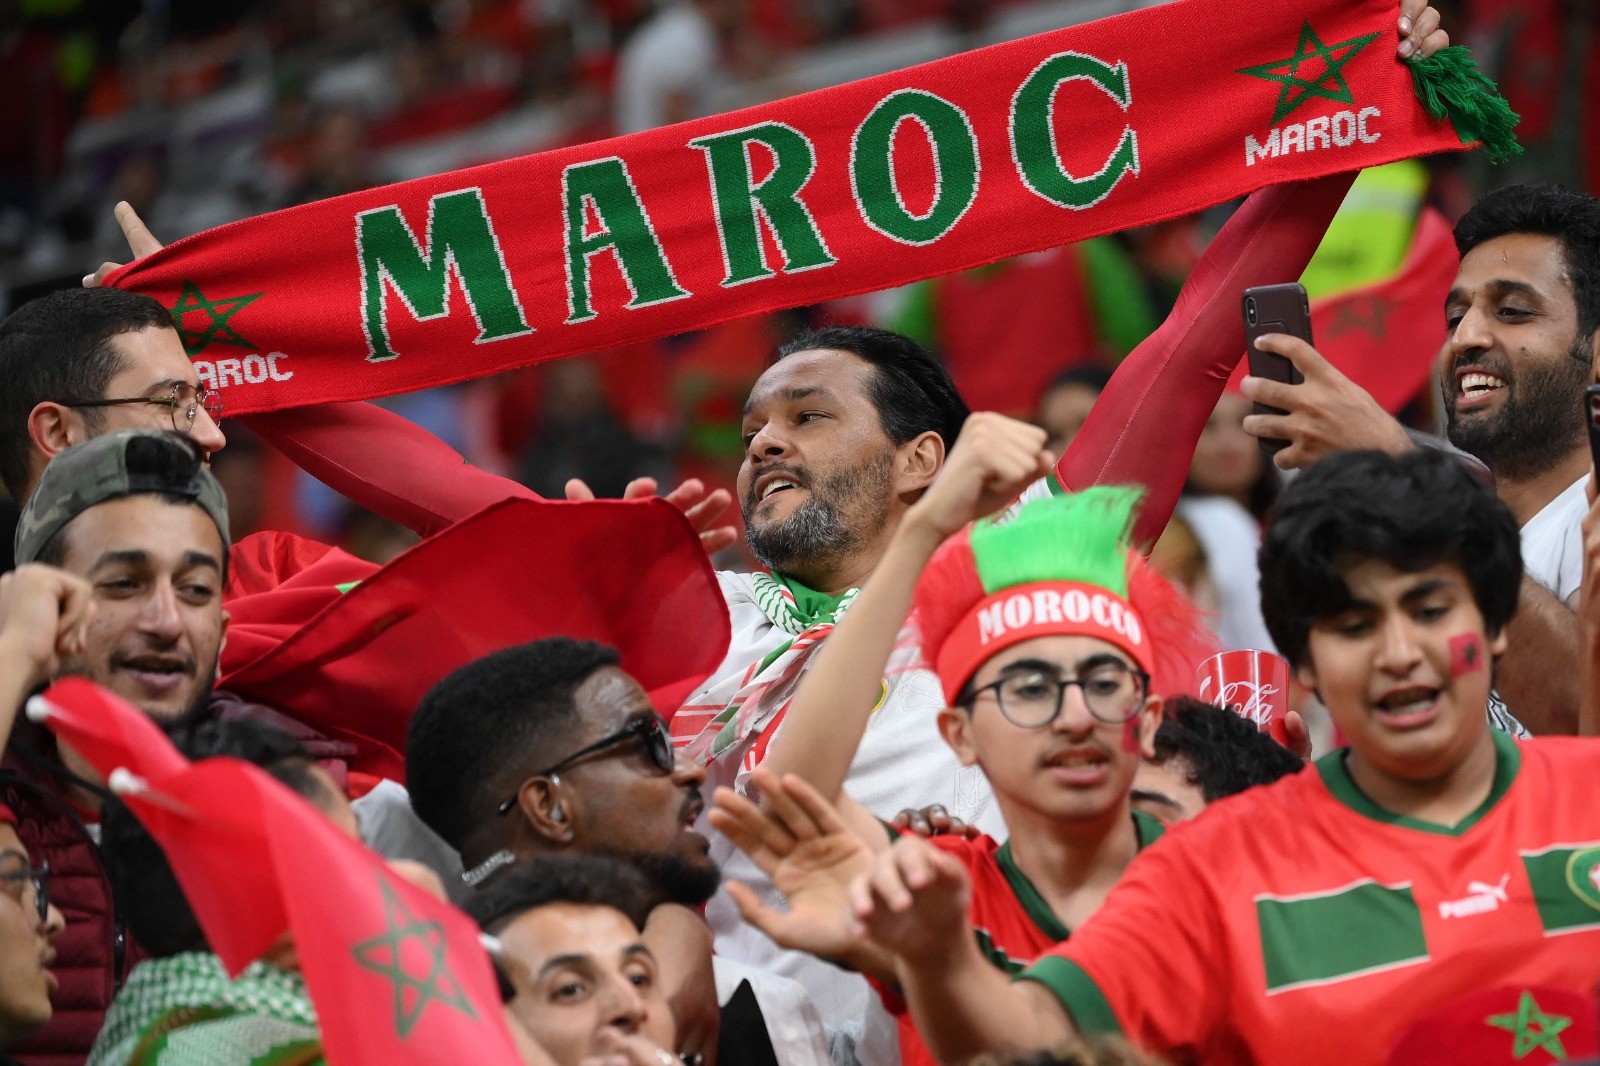 المغاربة يحتشدون في ملعب المباراة لتشجيع منتحبهم .. تصوير (الفرنسية) 5.jpg